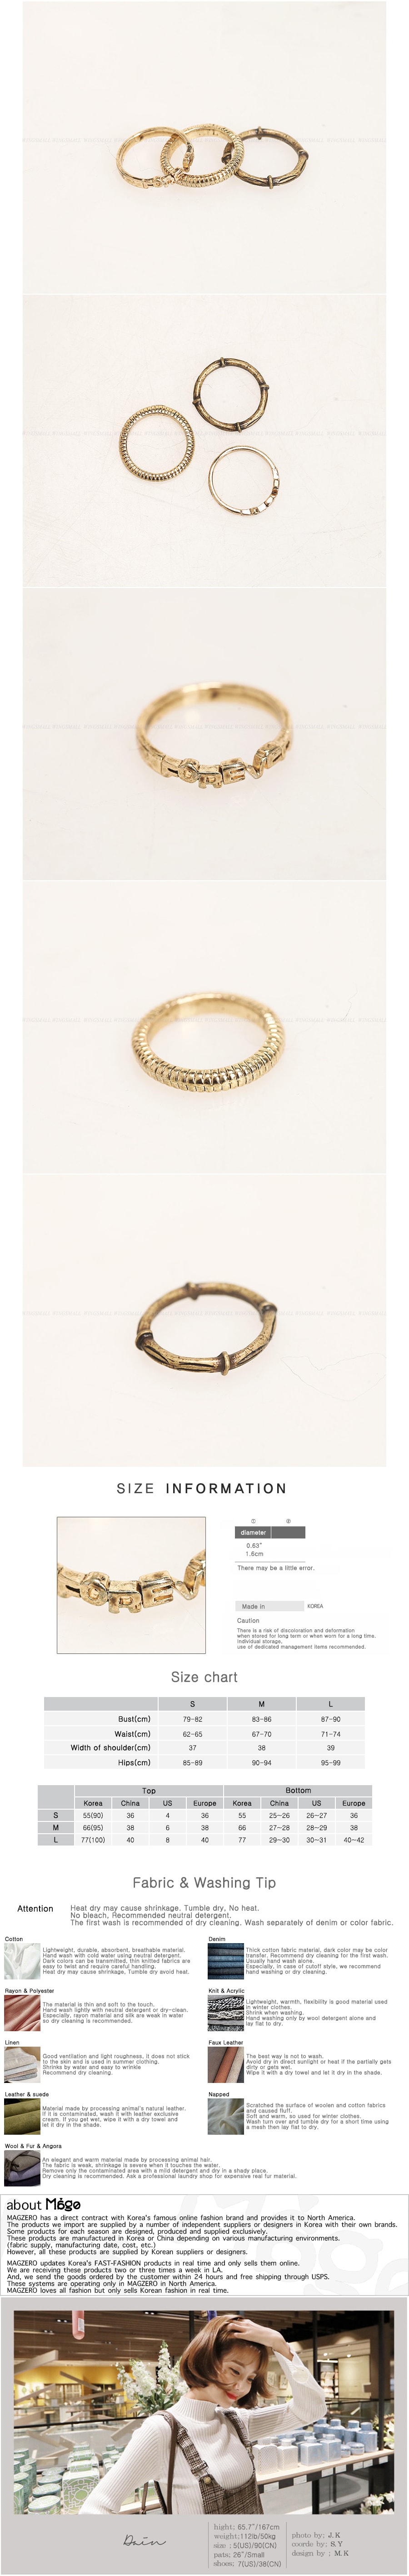 KOREA Vintage Gold 3 Pieces Set Metal Rings [Free Shipping]